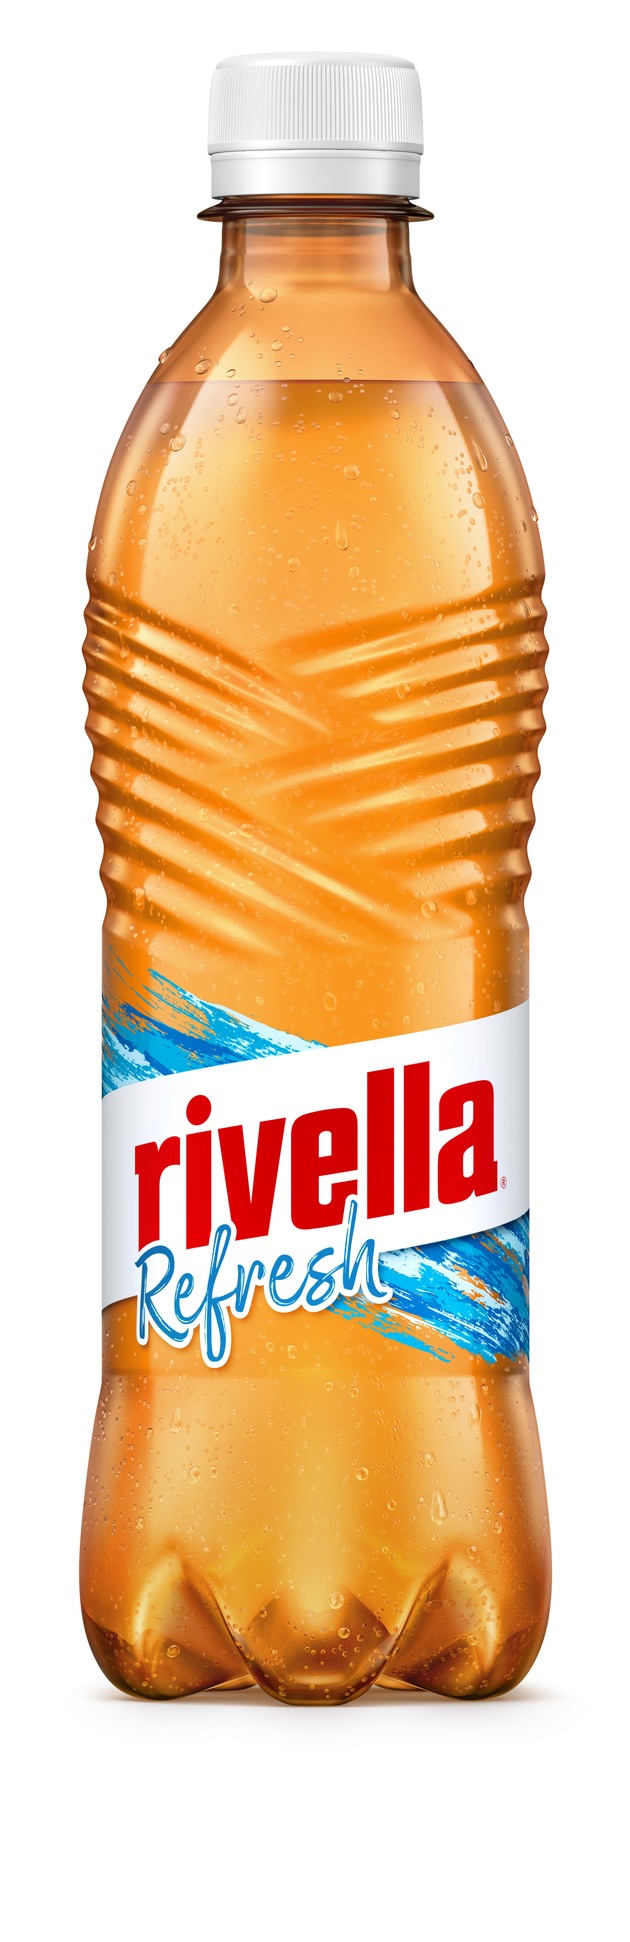 «Rivella Refresh»: la nuova variante leggera e frizzante del prodotto originale svizzero